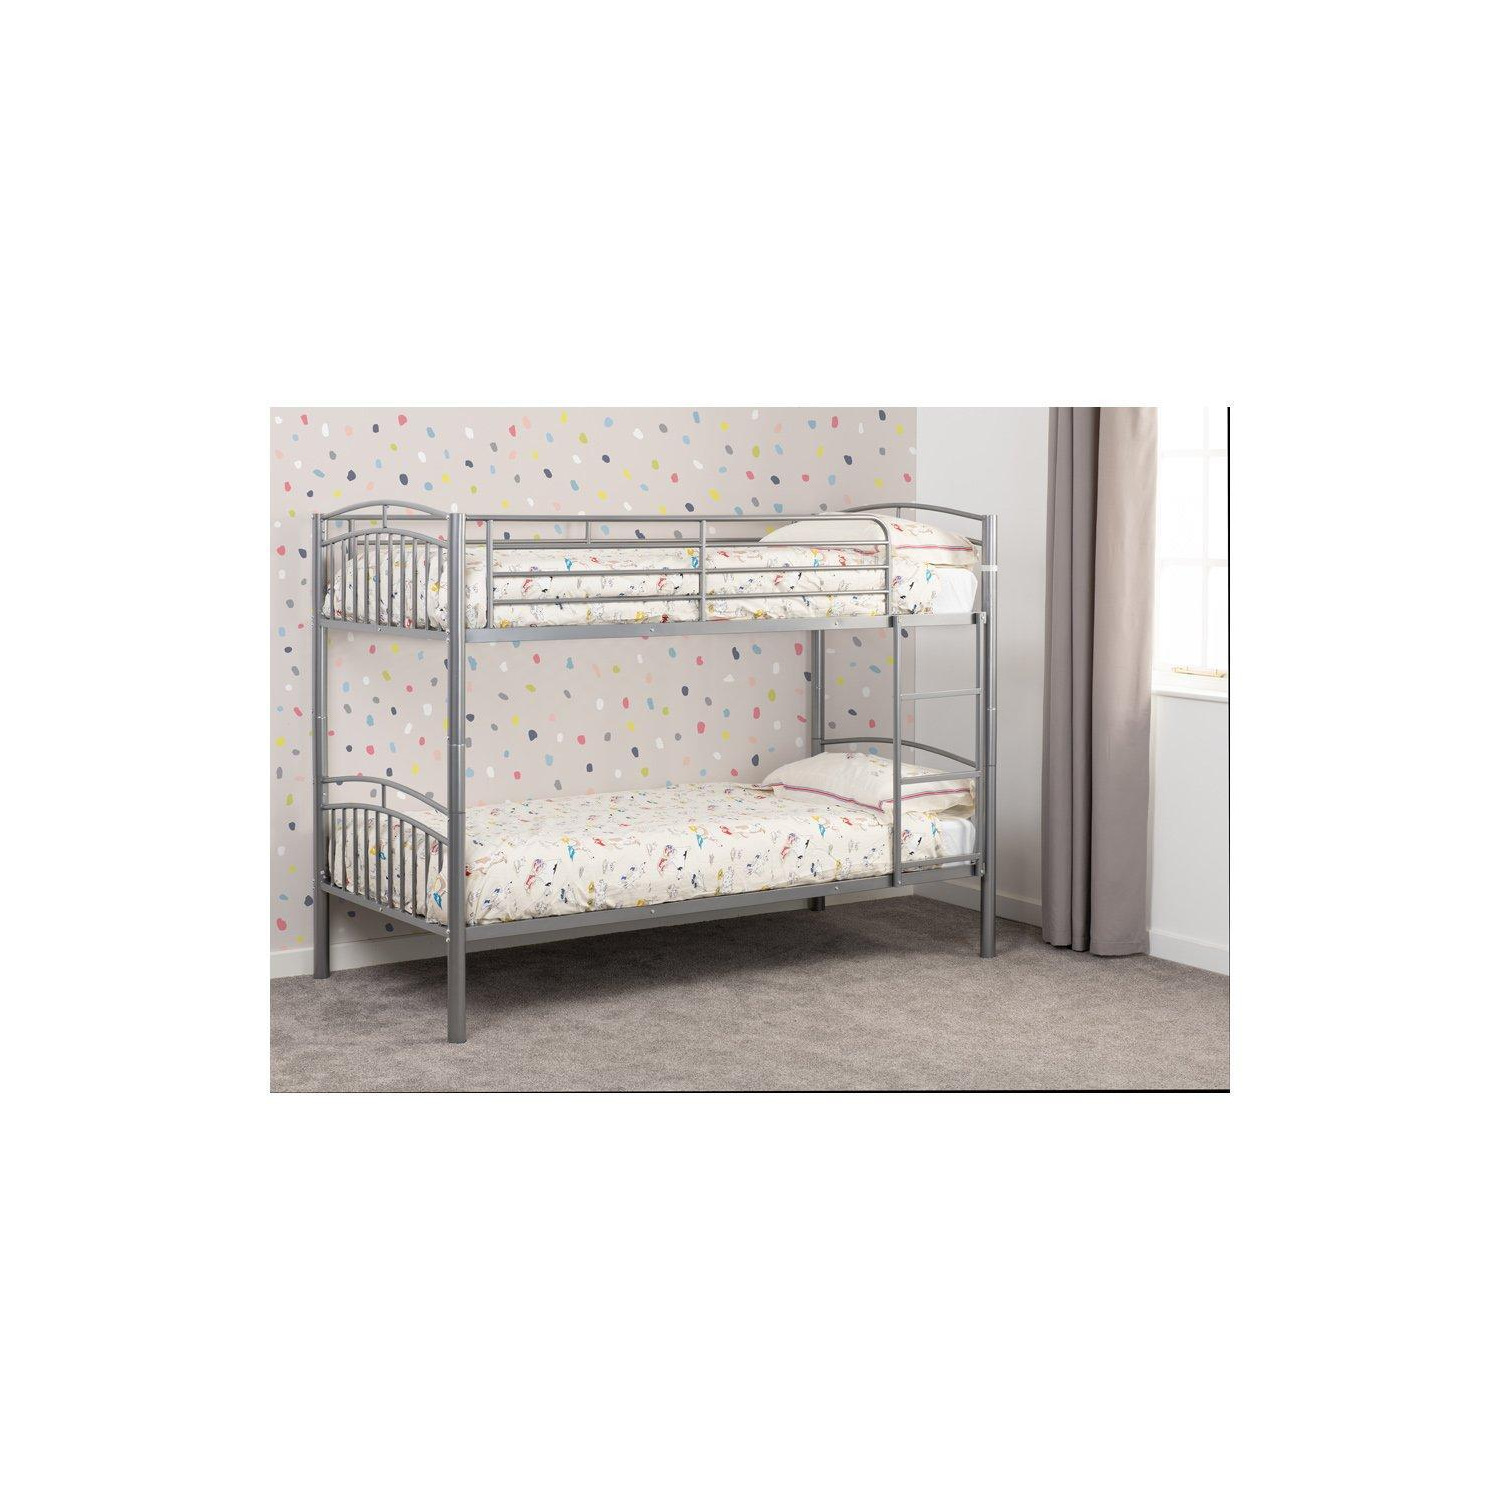 Ventura 3' Single Bunk Bed - image 1